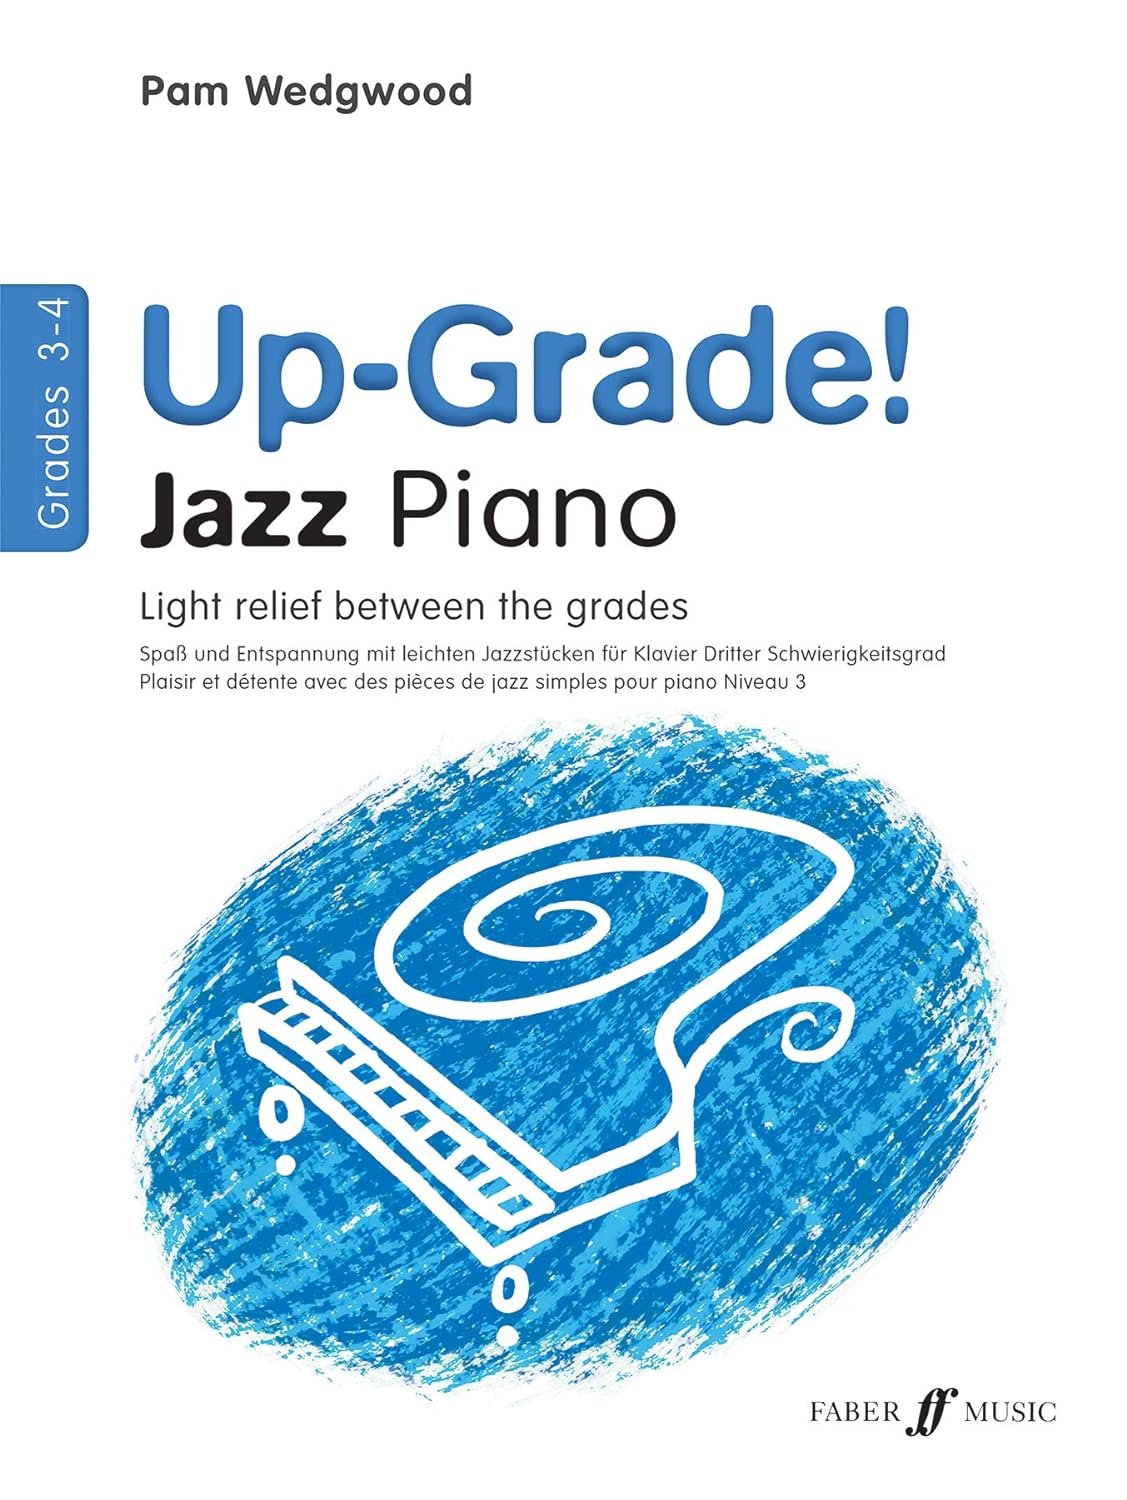 Up-Grade Piano Jazz G3-4 Wedgwood Piano Traders